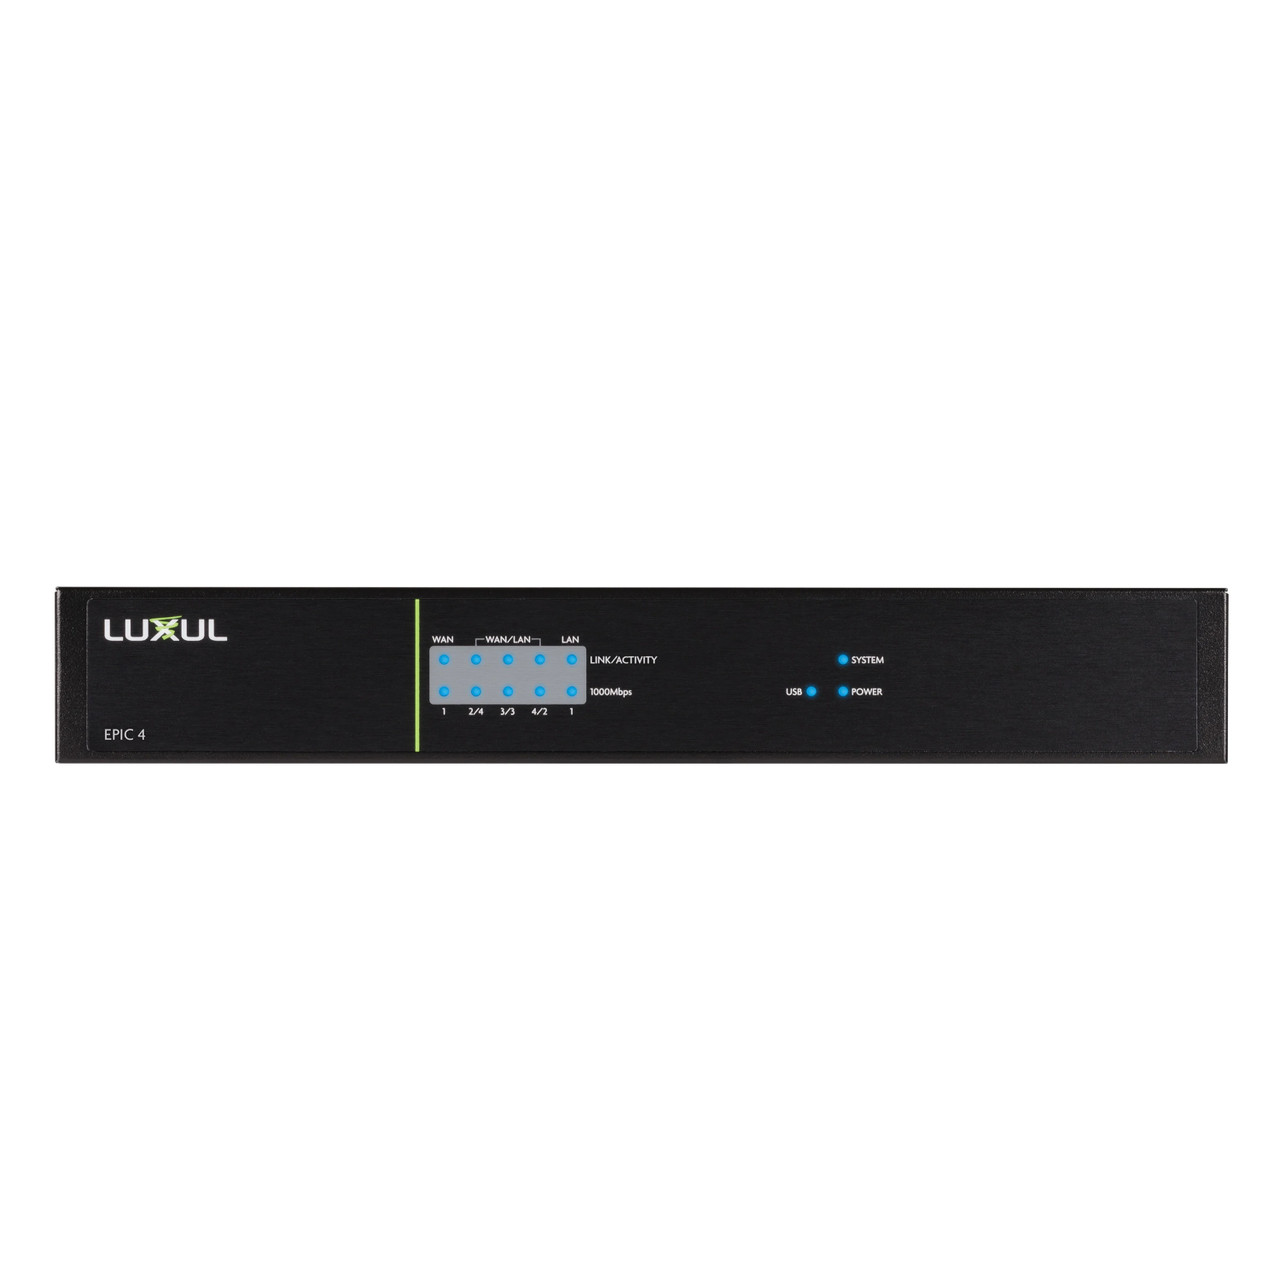 Luxul Epic 4 ABR-4500 Multi-WAN Load Balancing Gigabit VPN Router